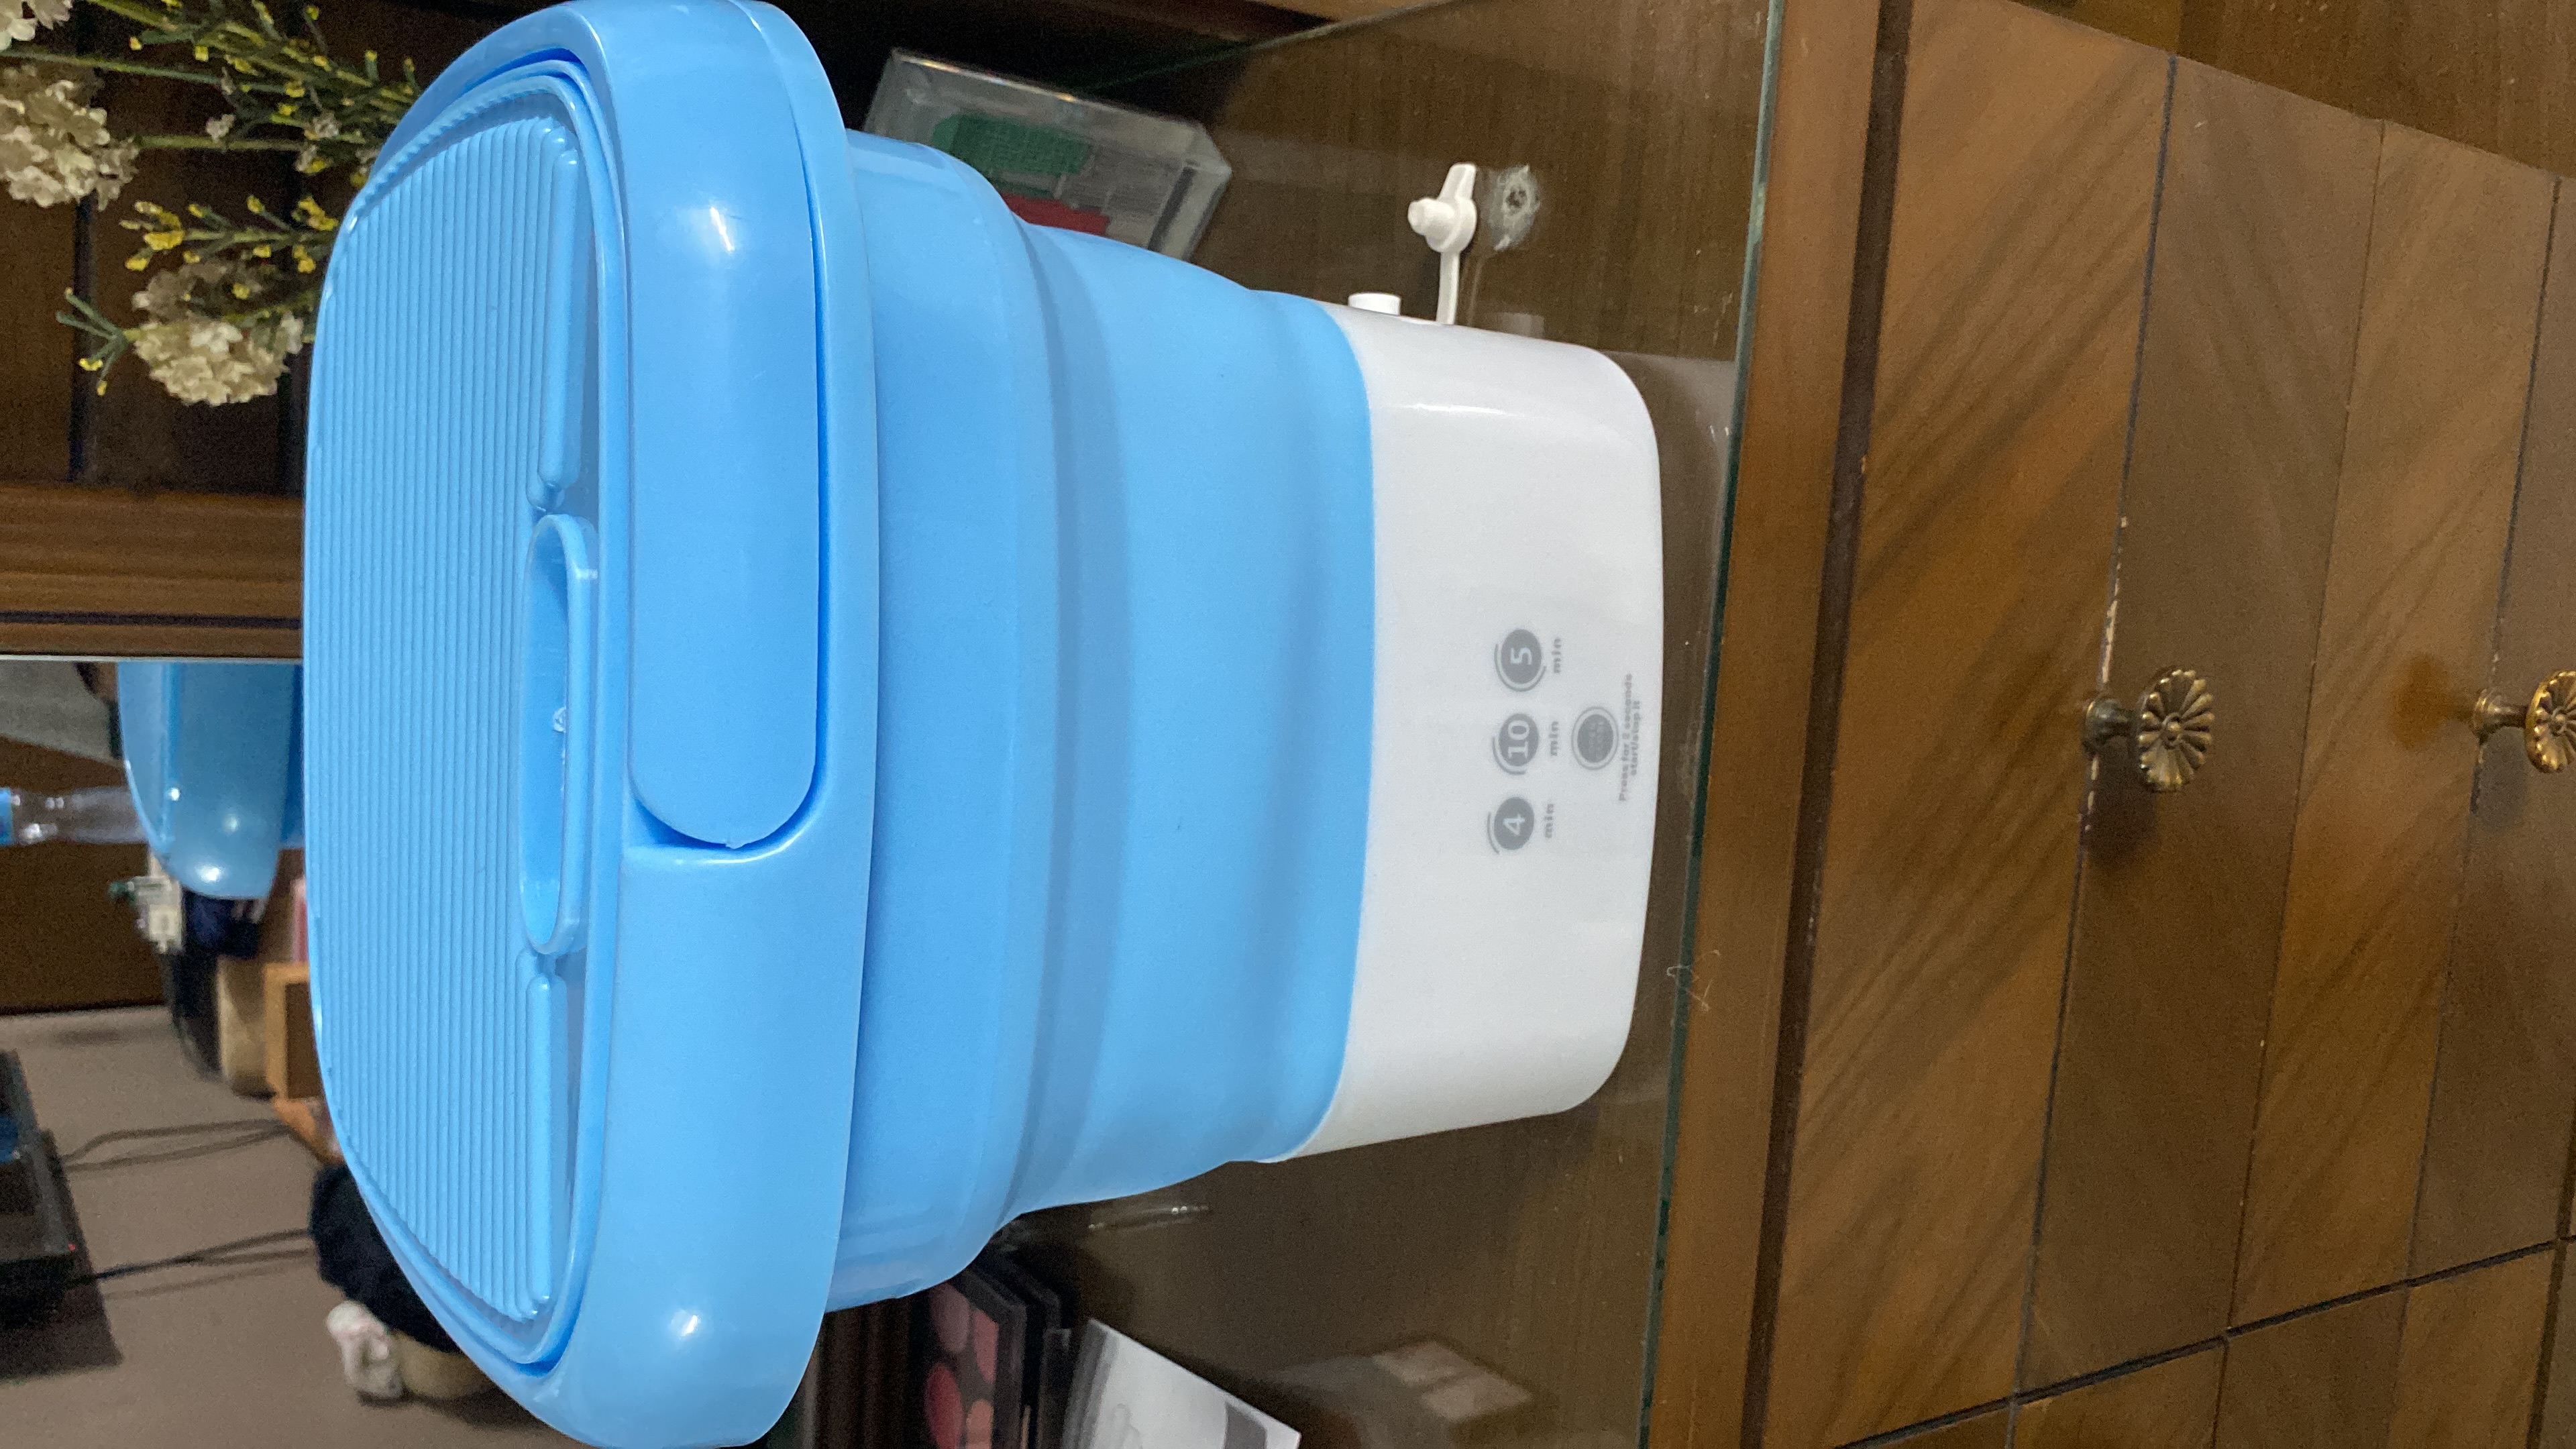 Mini Portable Washing Machine - Folding Washing Machine - Bucket Washer for  Clothes Laundry- Collapsible Washing Machine - Underwear Washing Machine